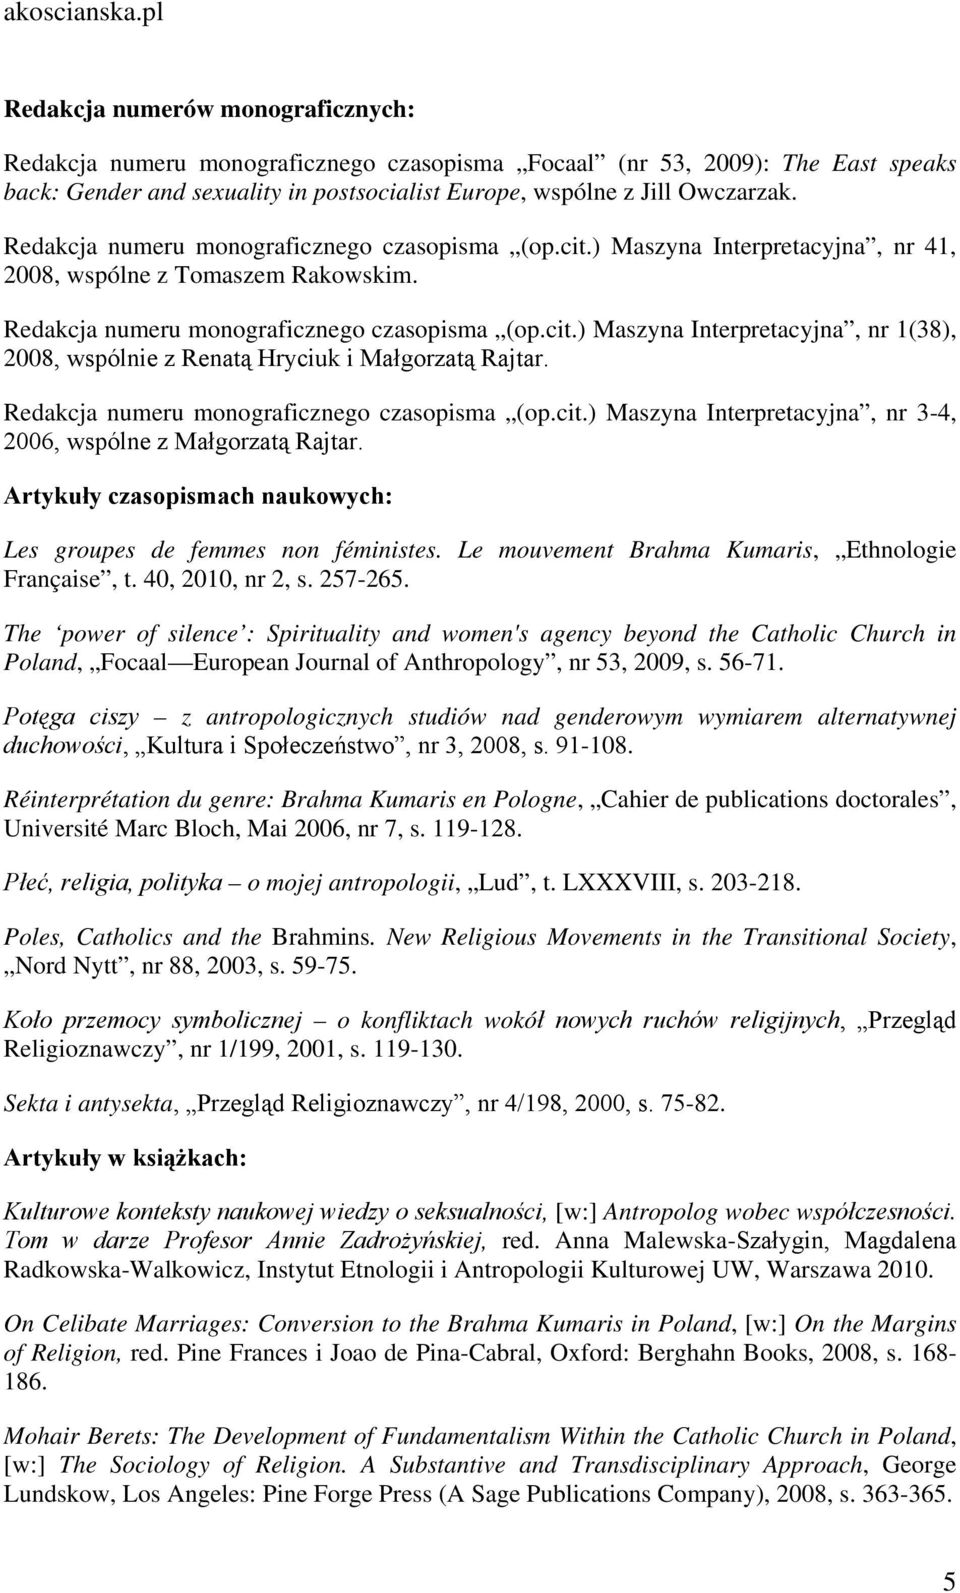 Redakcja numeru monograficznego czasopisma (op.cit.) Maszyna Interpretacyjna, nr 3-4, 2006, wspólne z Małgorzatą Rajtar. Artykuły czasopismach naukowych: Les groupes de femmes non féministes.